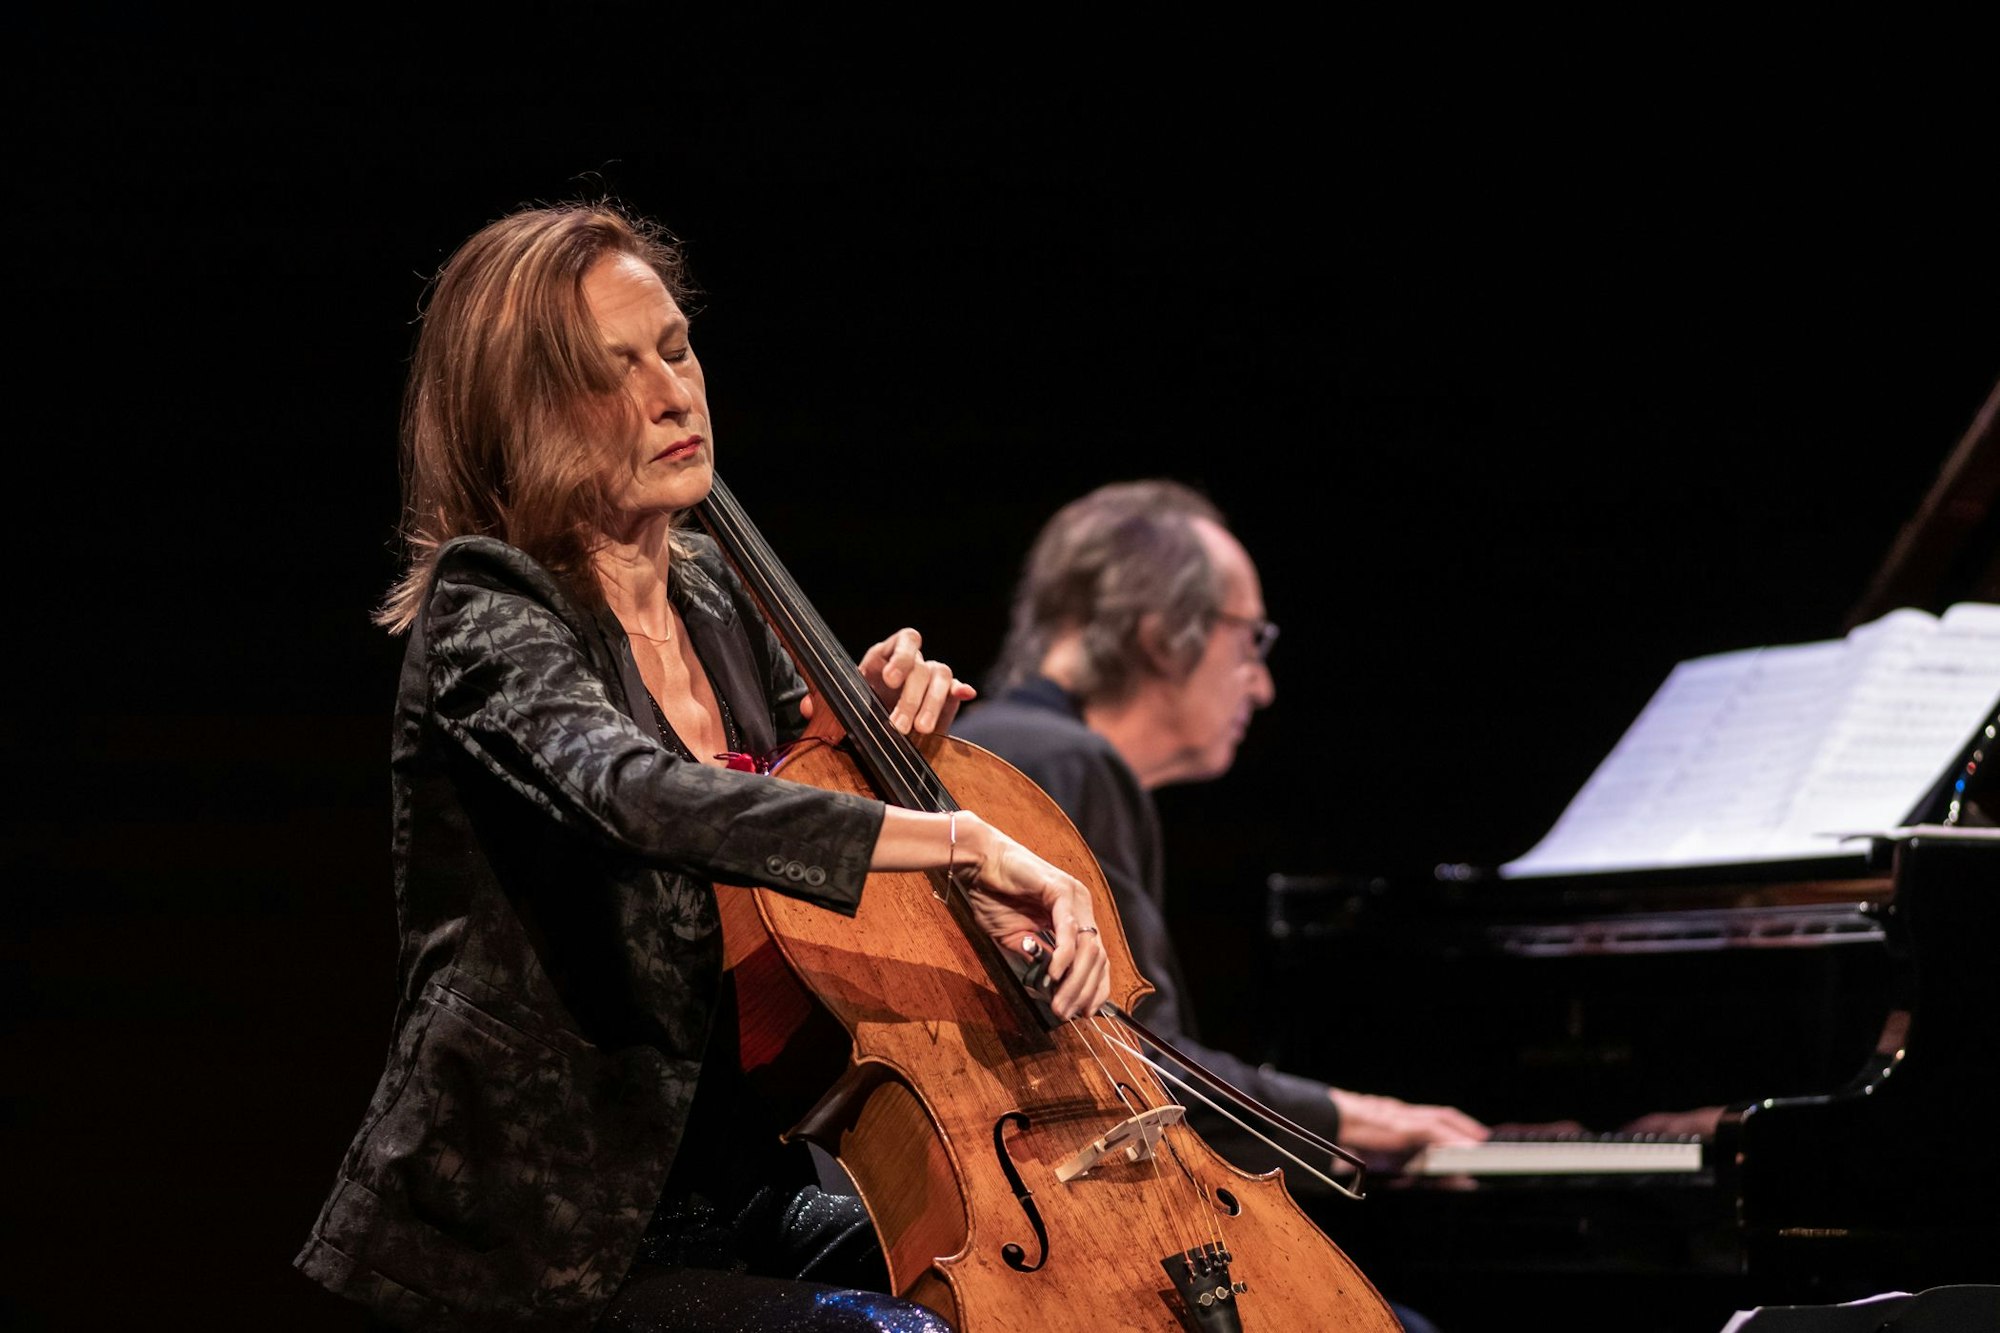 Anja Lechner spielt mit geschlossenen Augen Cello, François Couturier begleitet sie auf einem Flügel.